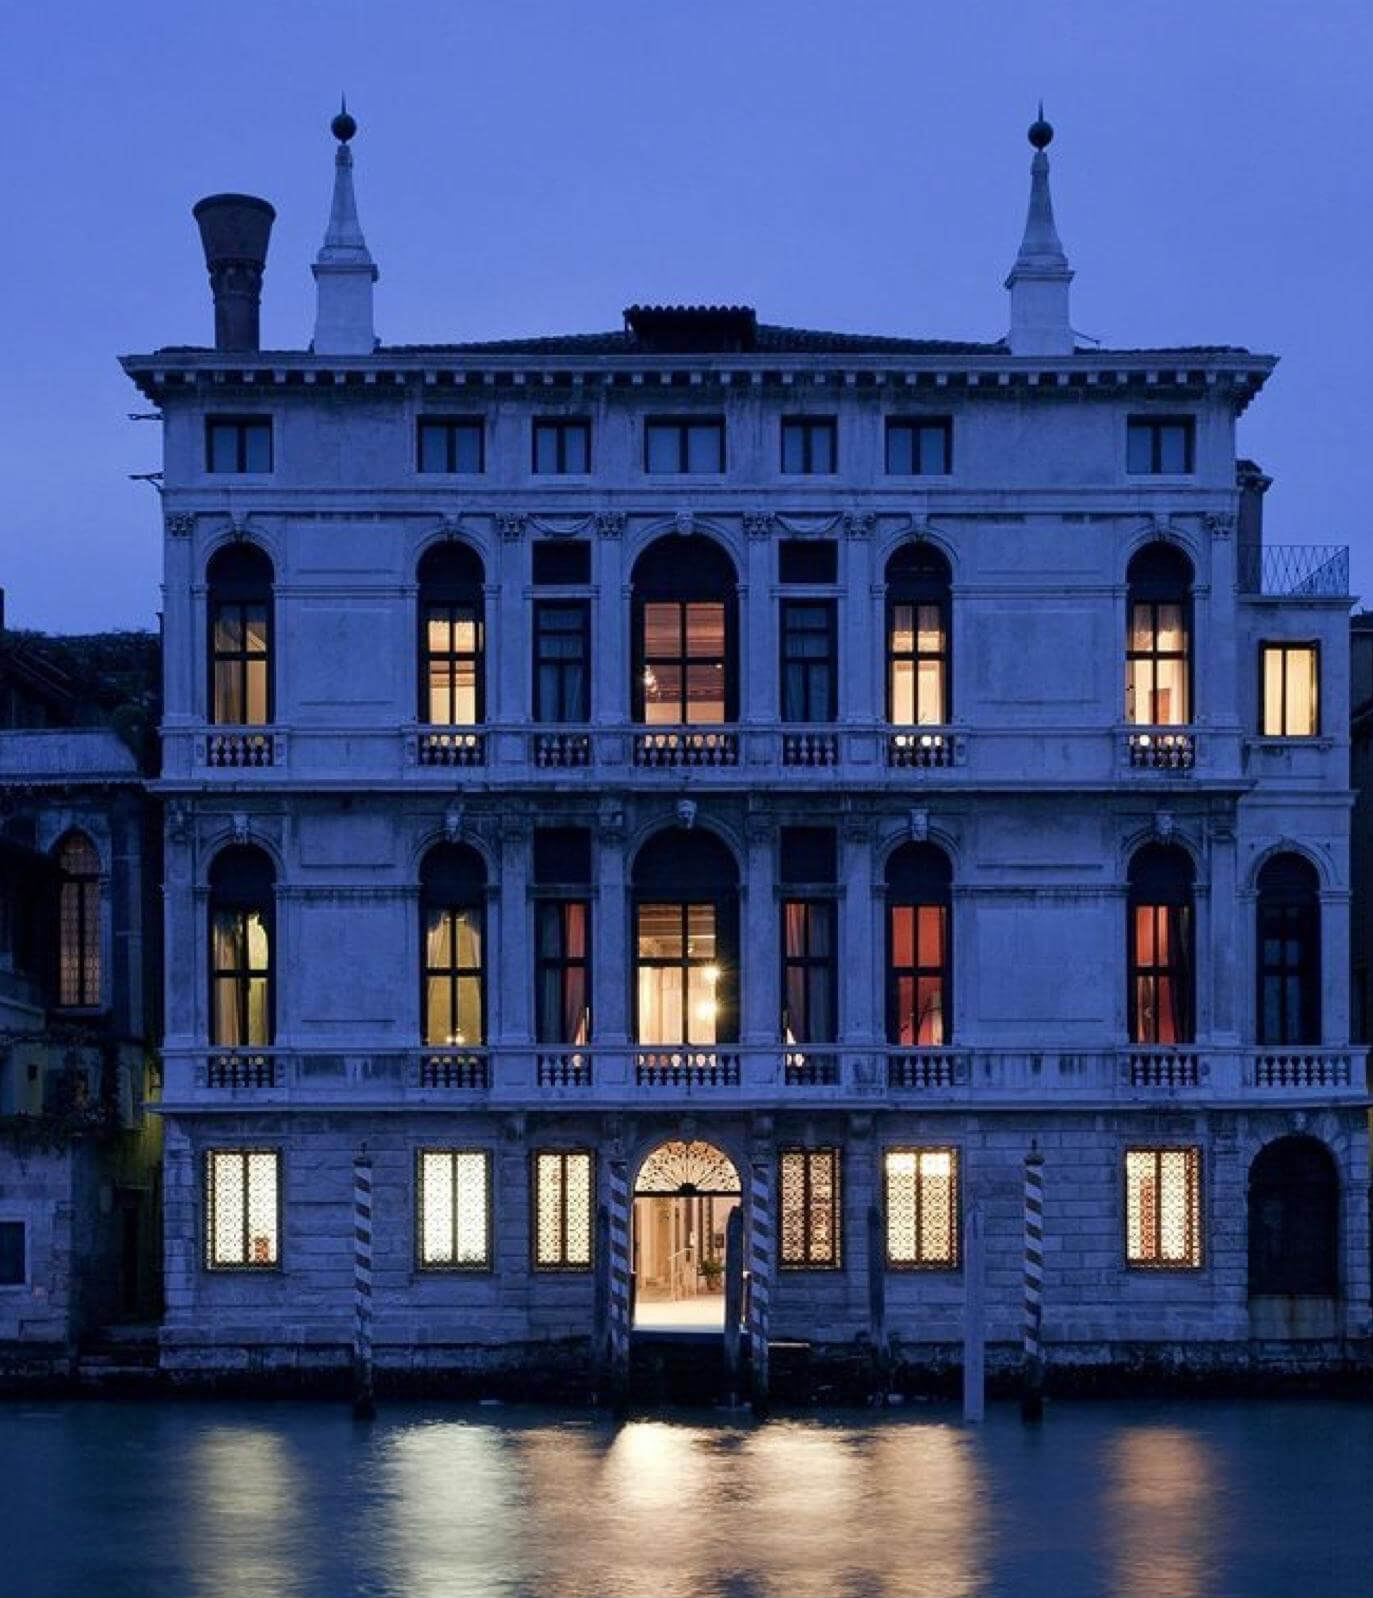 La nostra sede: Palazzo Giustinian Lolin - San Marco 2893 - 30124 Venezia